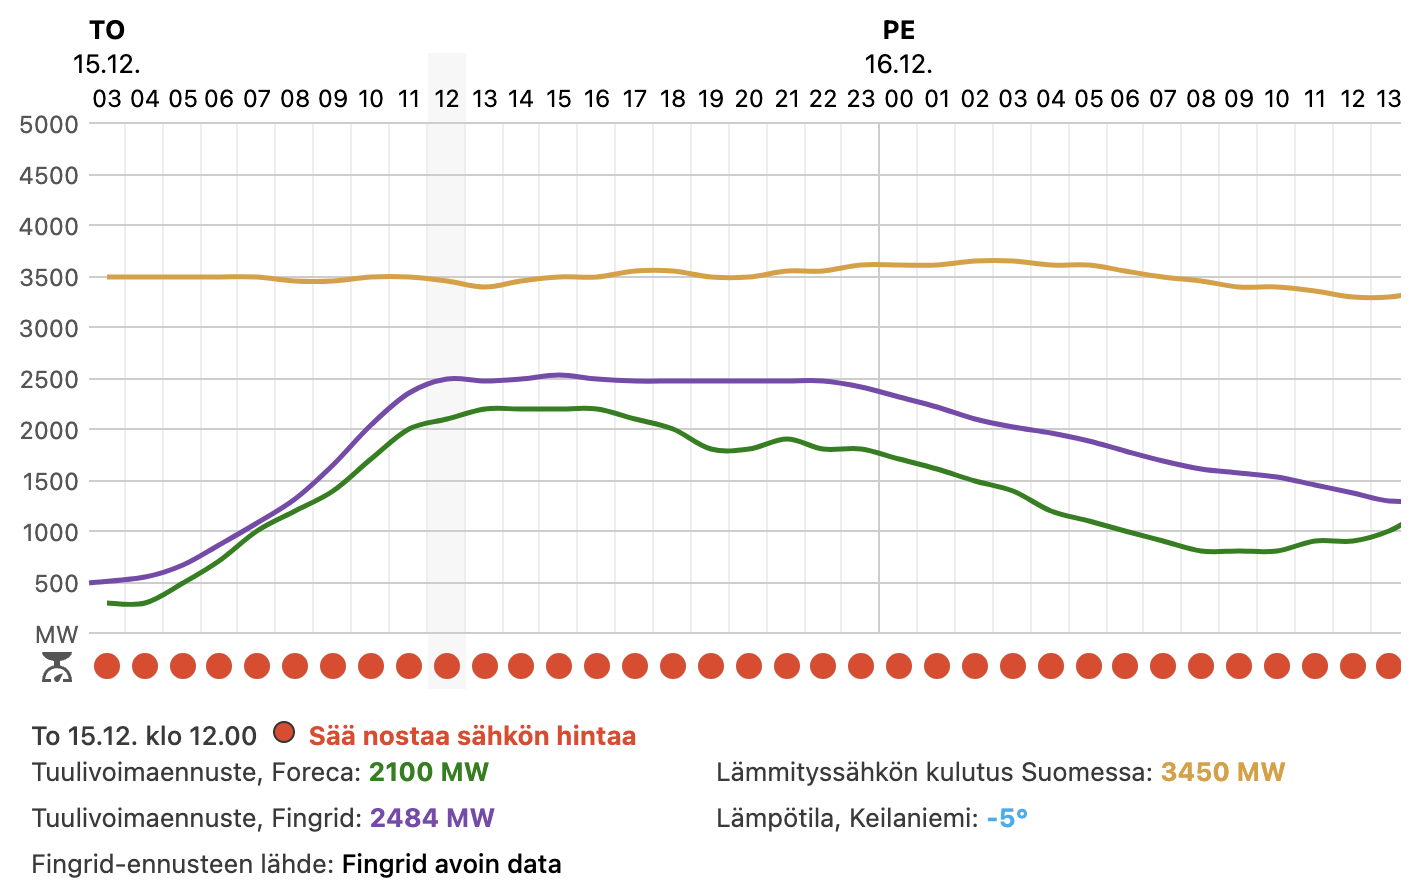 Sähkön hintapuntarista näkee muun muassa tuulivoimaennusteen, lämmityssähkön kulutuksen ennusteen ja arvion niiden vaikutuksesta pörssisähkön hintaan.